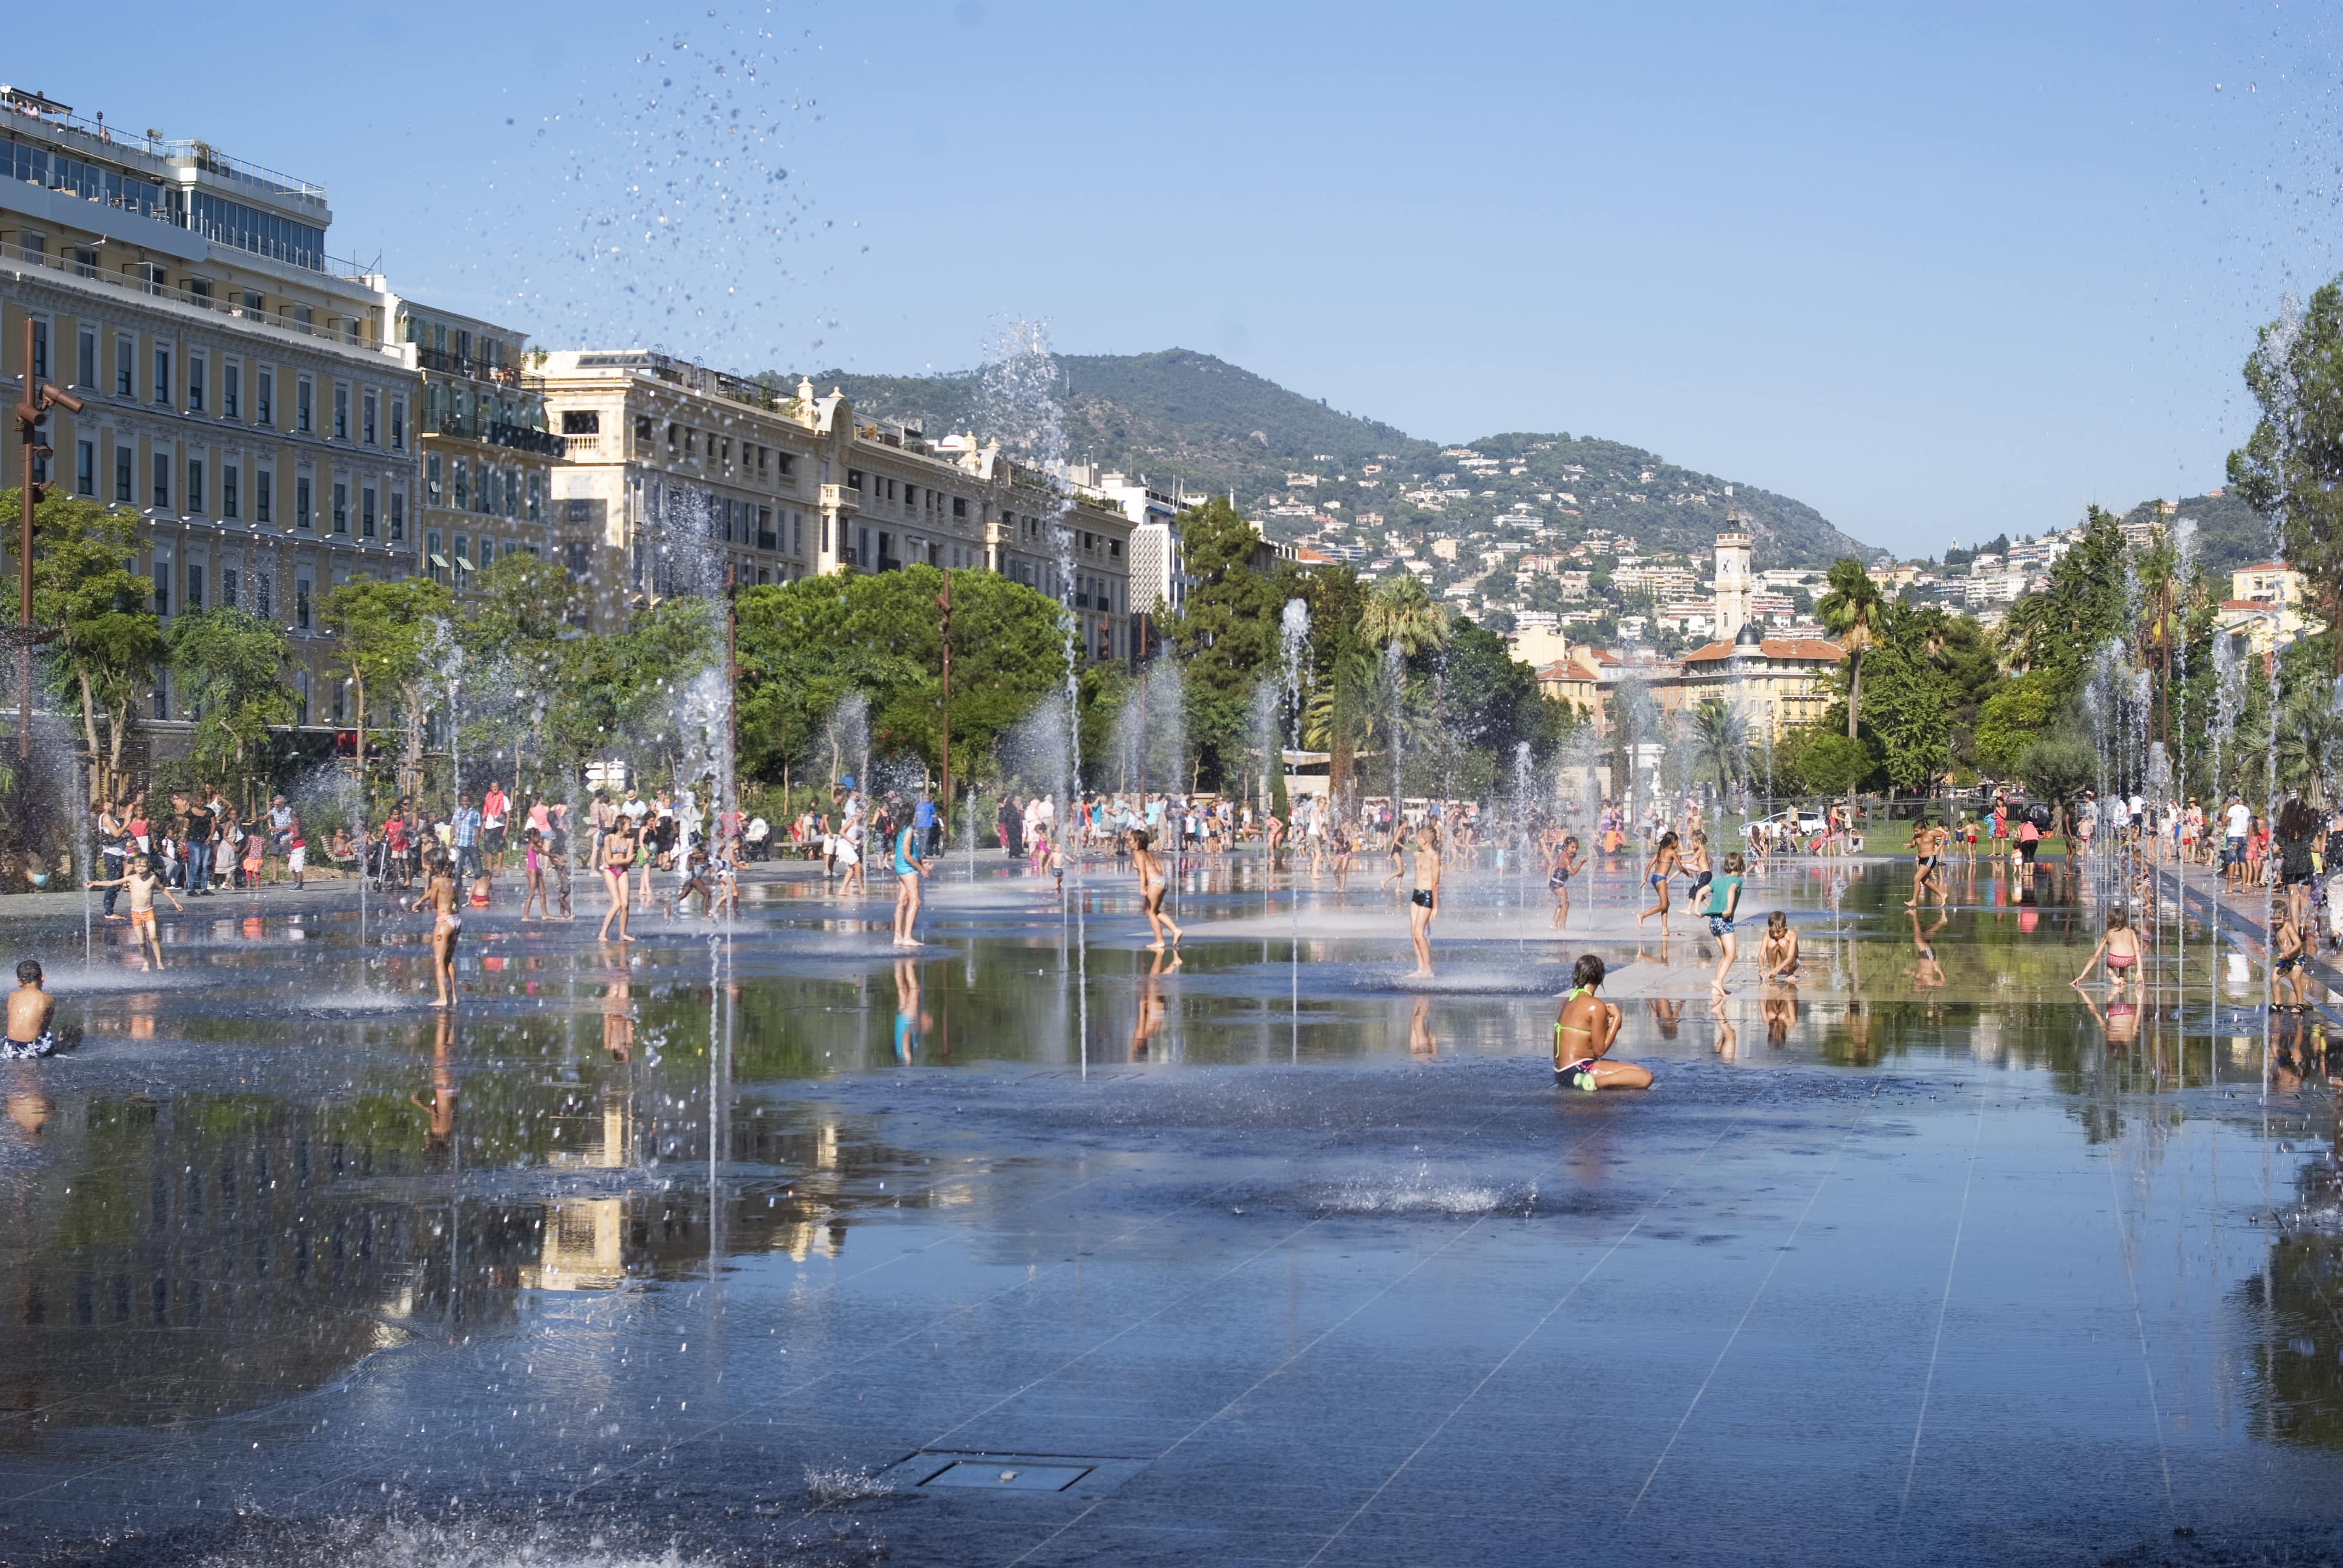 Vacances à Nice : quelles activités pour les enfants ?